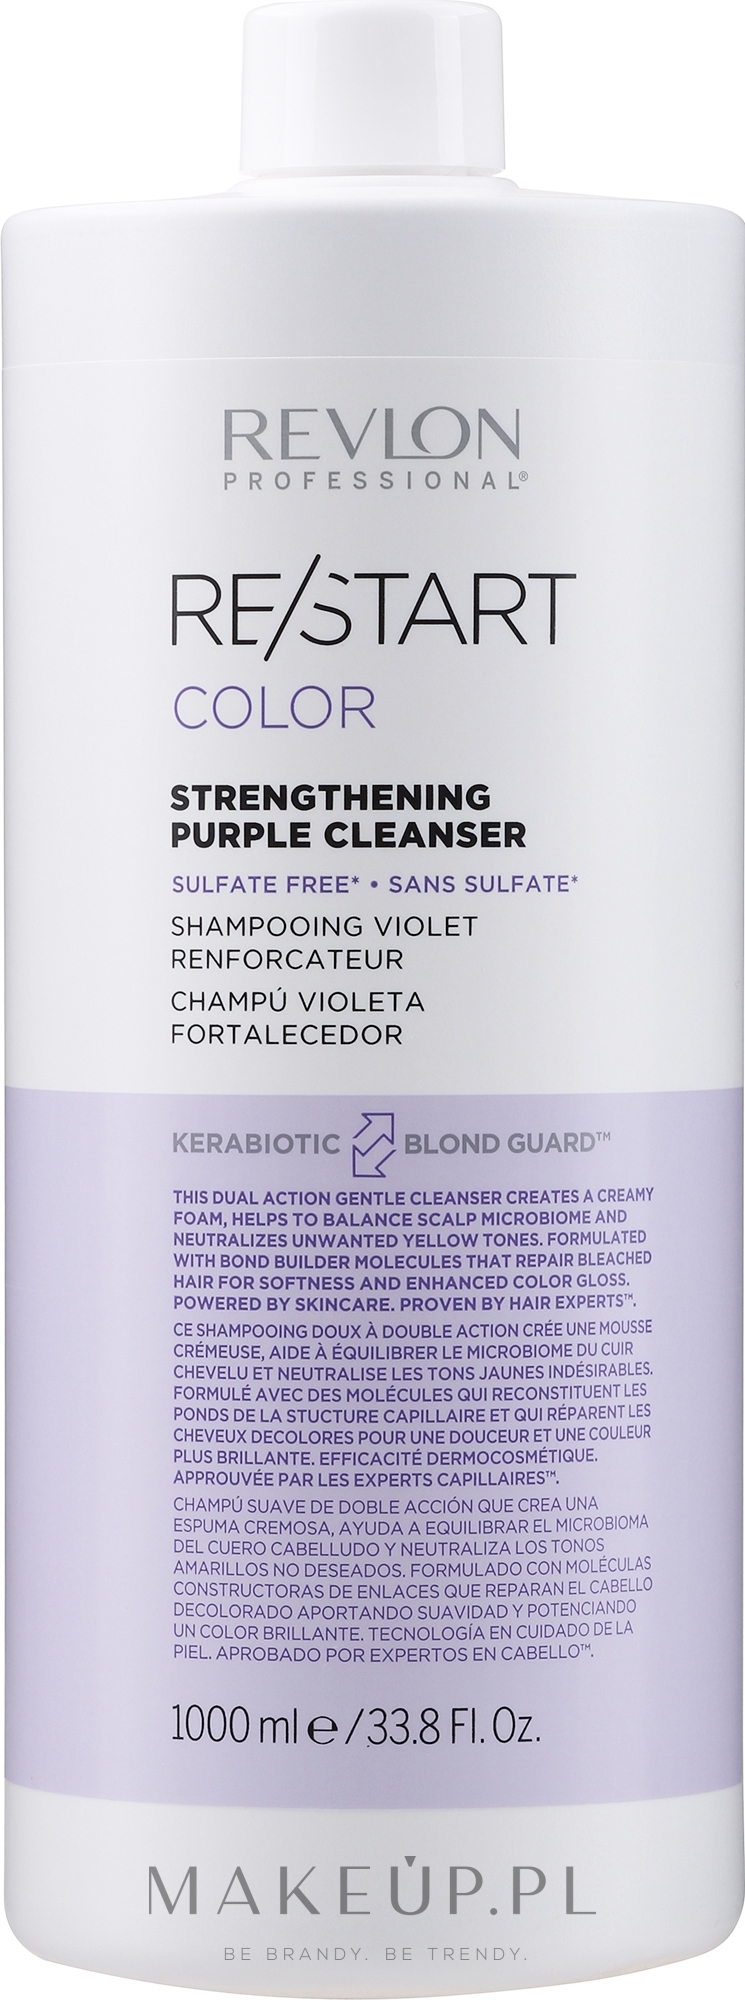 Szampon do włosów farbowanych - Revlon Professional Restart Color Purple Cleanser — Zdjęcie 1000 ml